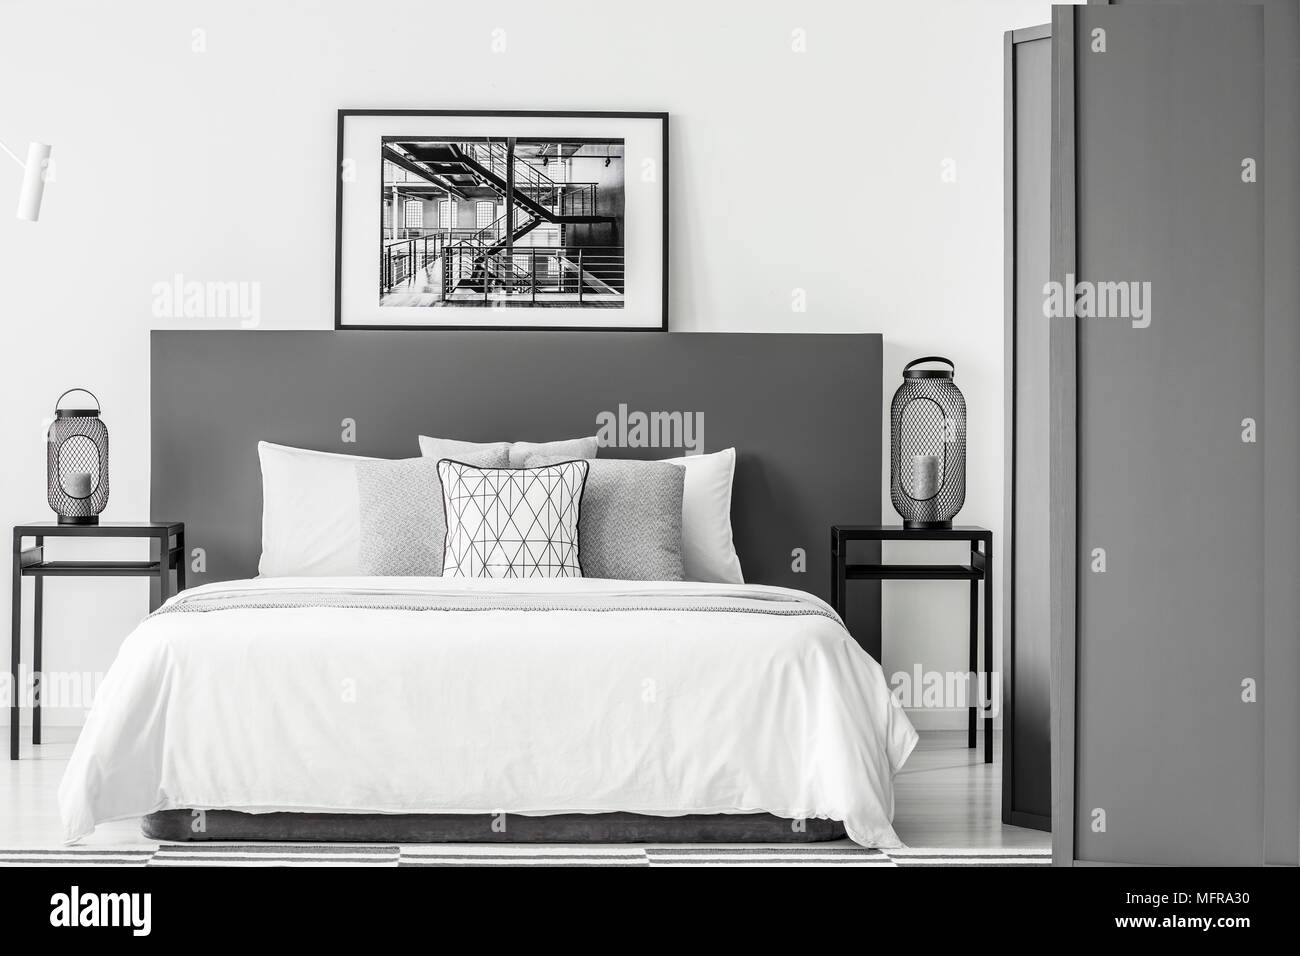 In bianco e nero poster sulla testata del letto in camera da letto interno con lanterne su tabelle Foto Stock